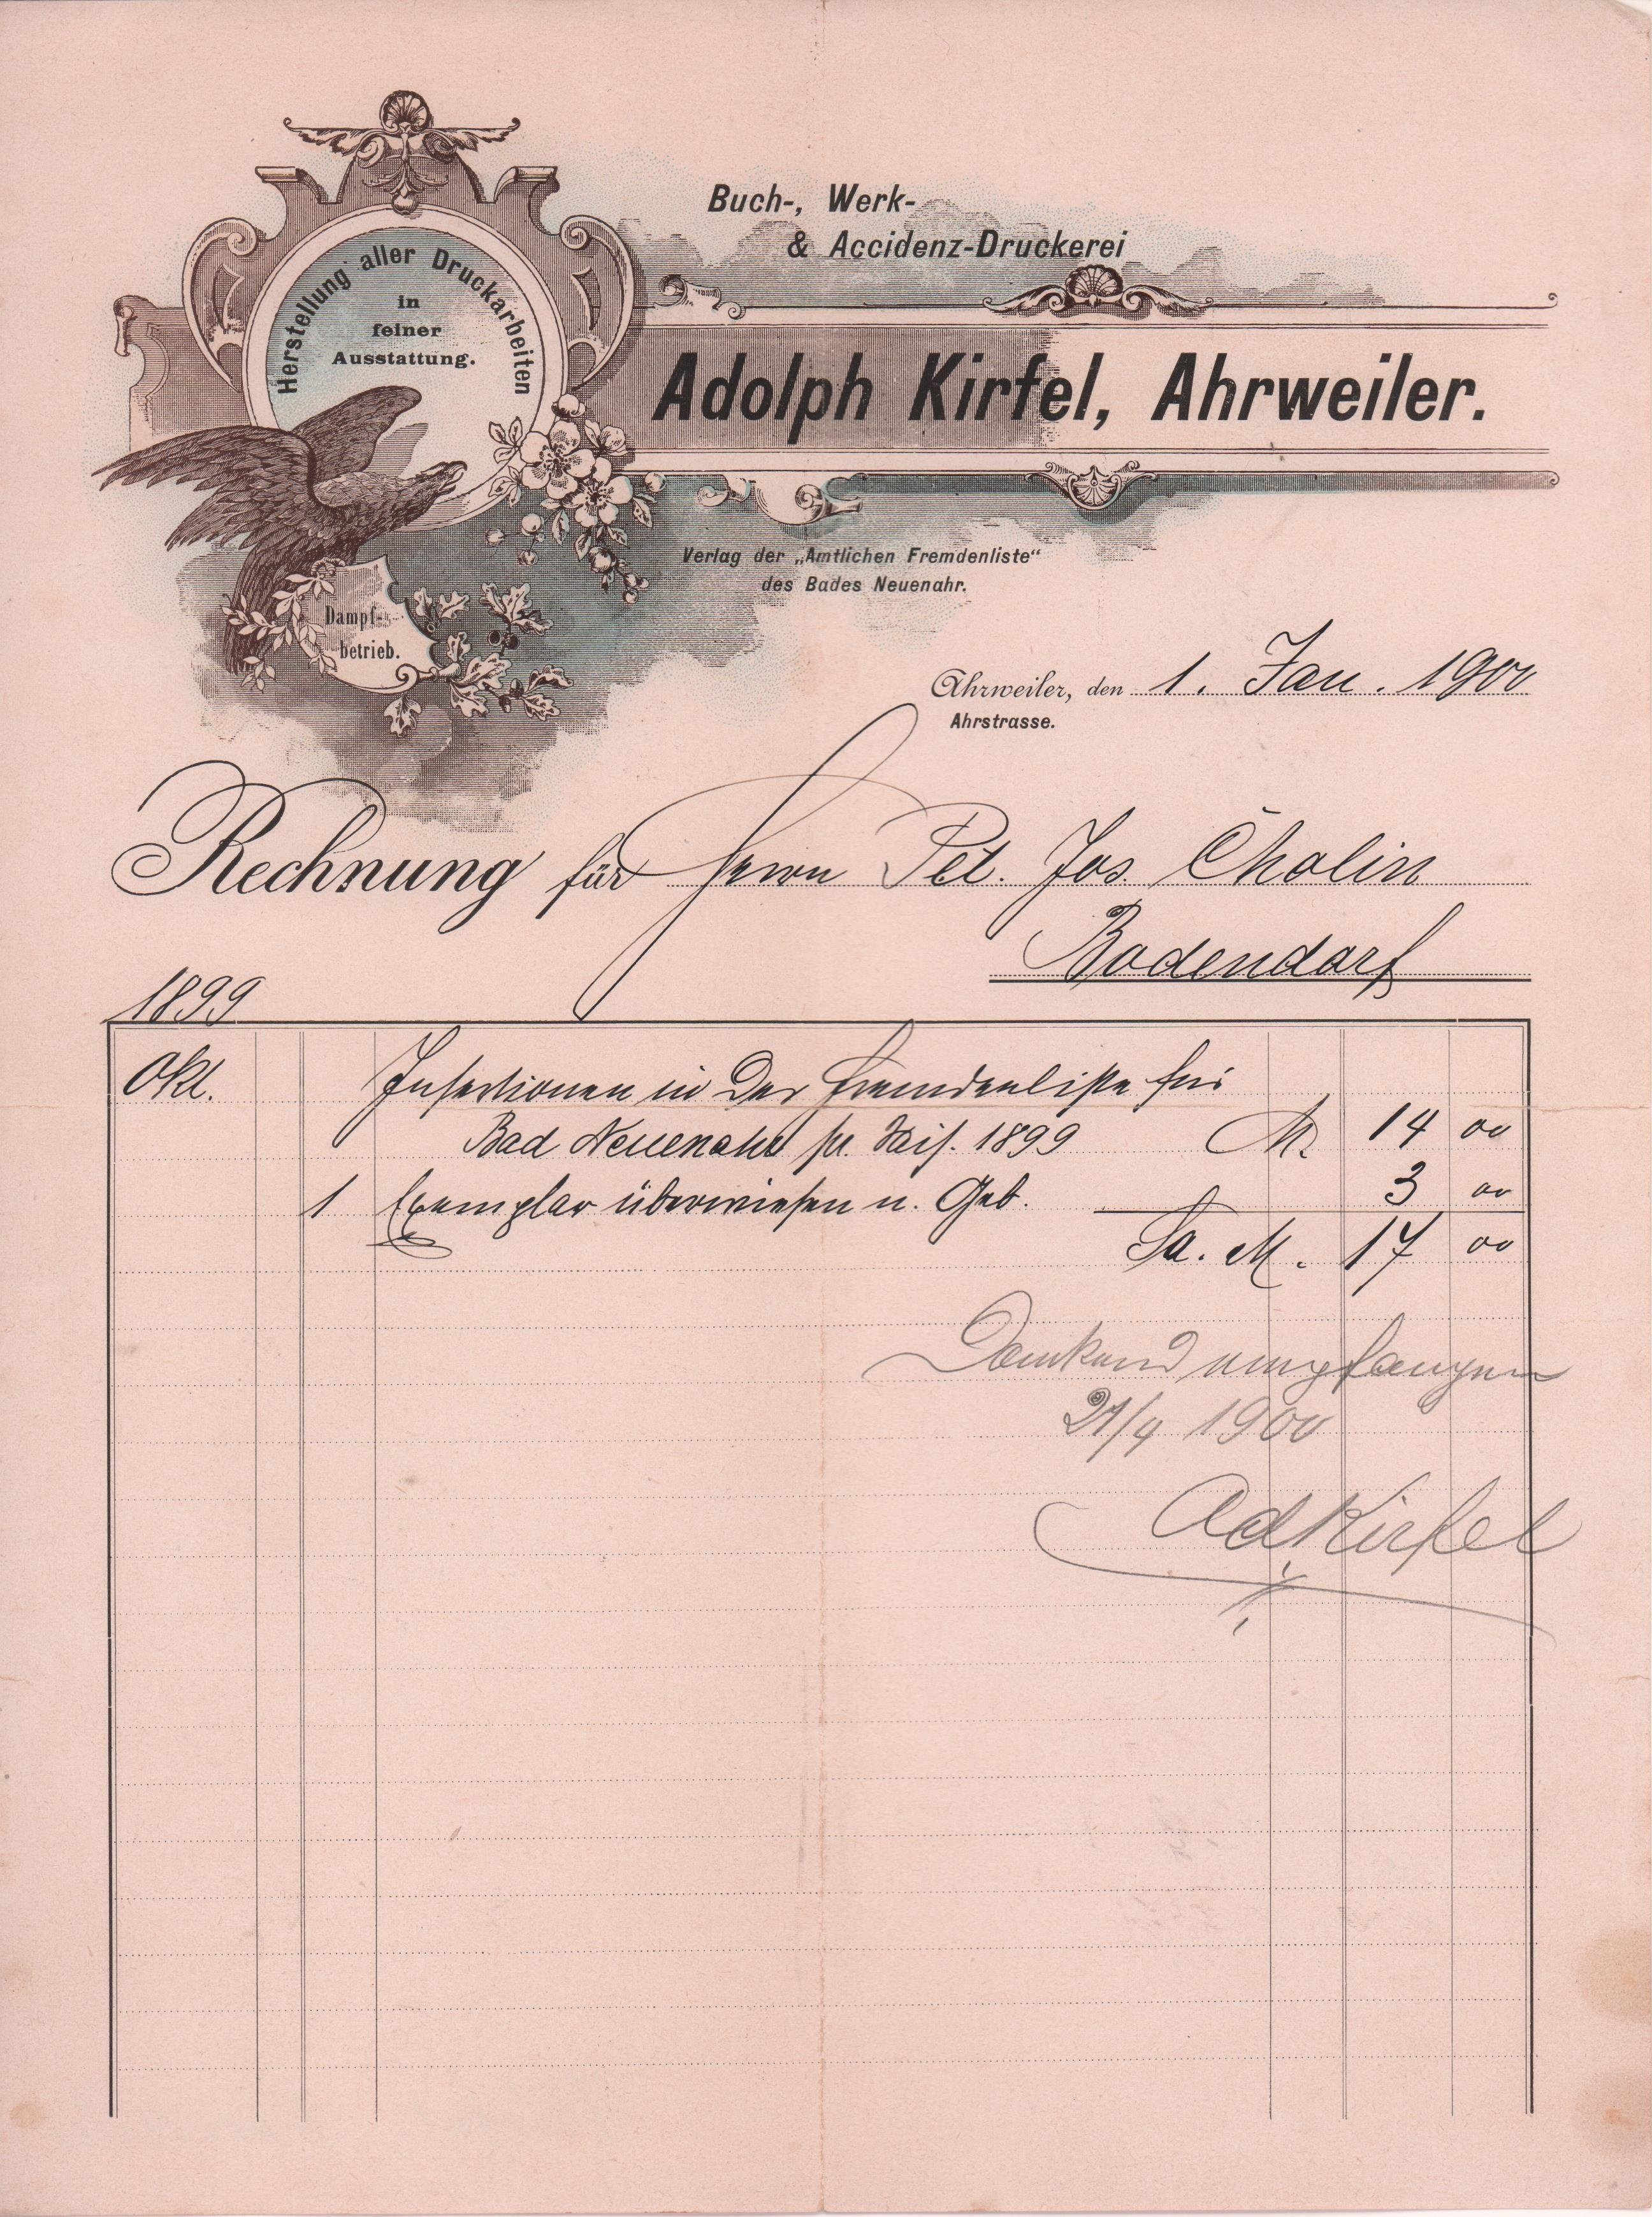 Rechnung der Buch-, Werk- und Accidenz-Druckerei Adolph Kirfel, Ahrweiler an Peter Josef Cholin vom 1 Januar 1900 (Heimatarchiv Bad Bodendorf CC BY-NC-SA)